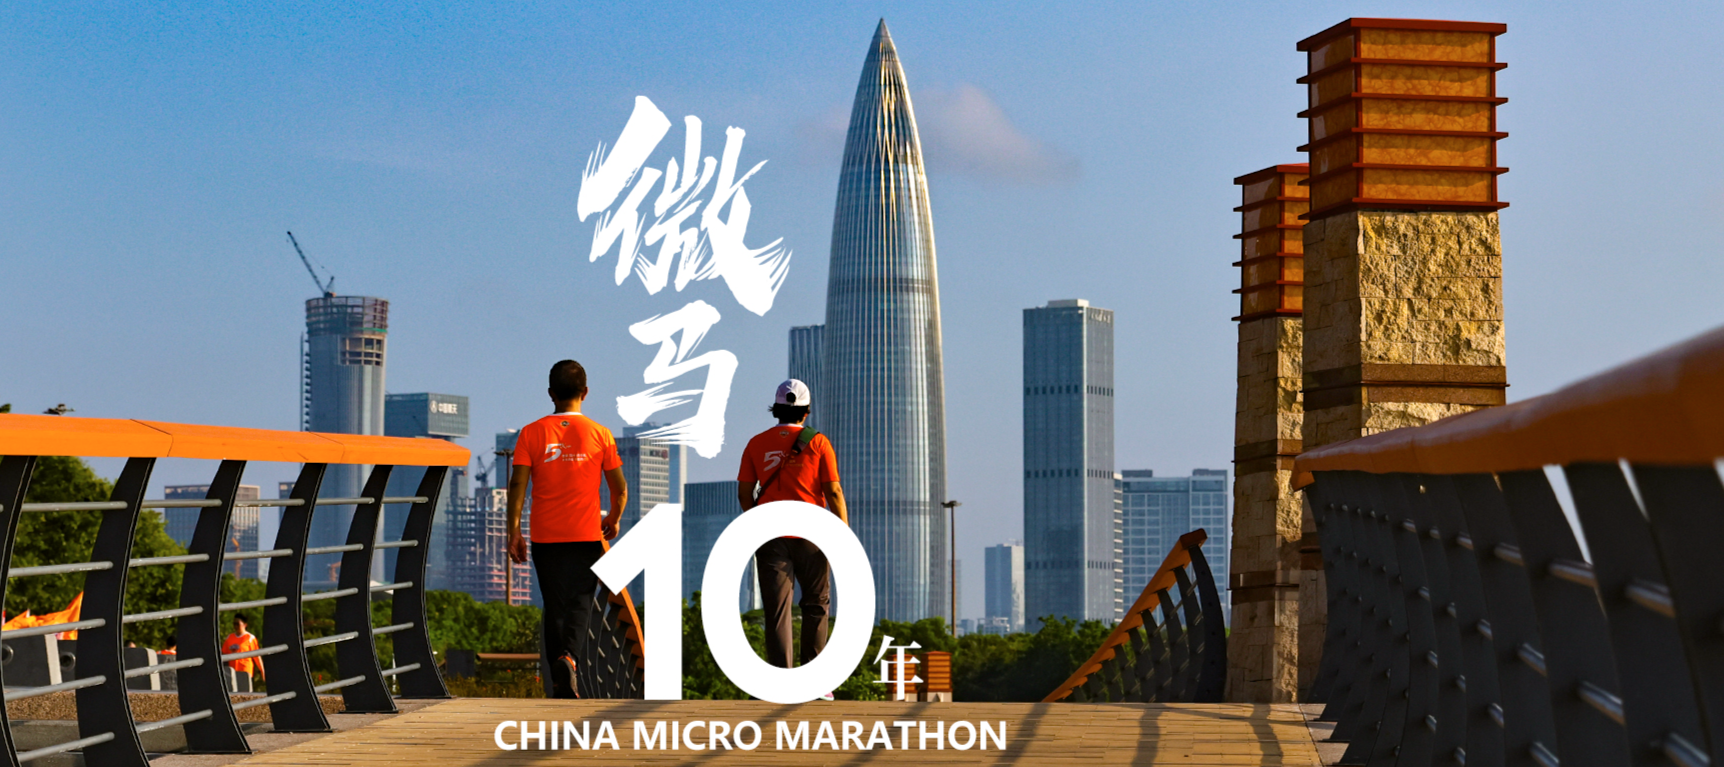 Une course à pied commémore le 10e anniversaire du Micro-marathon de Chine